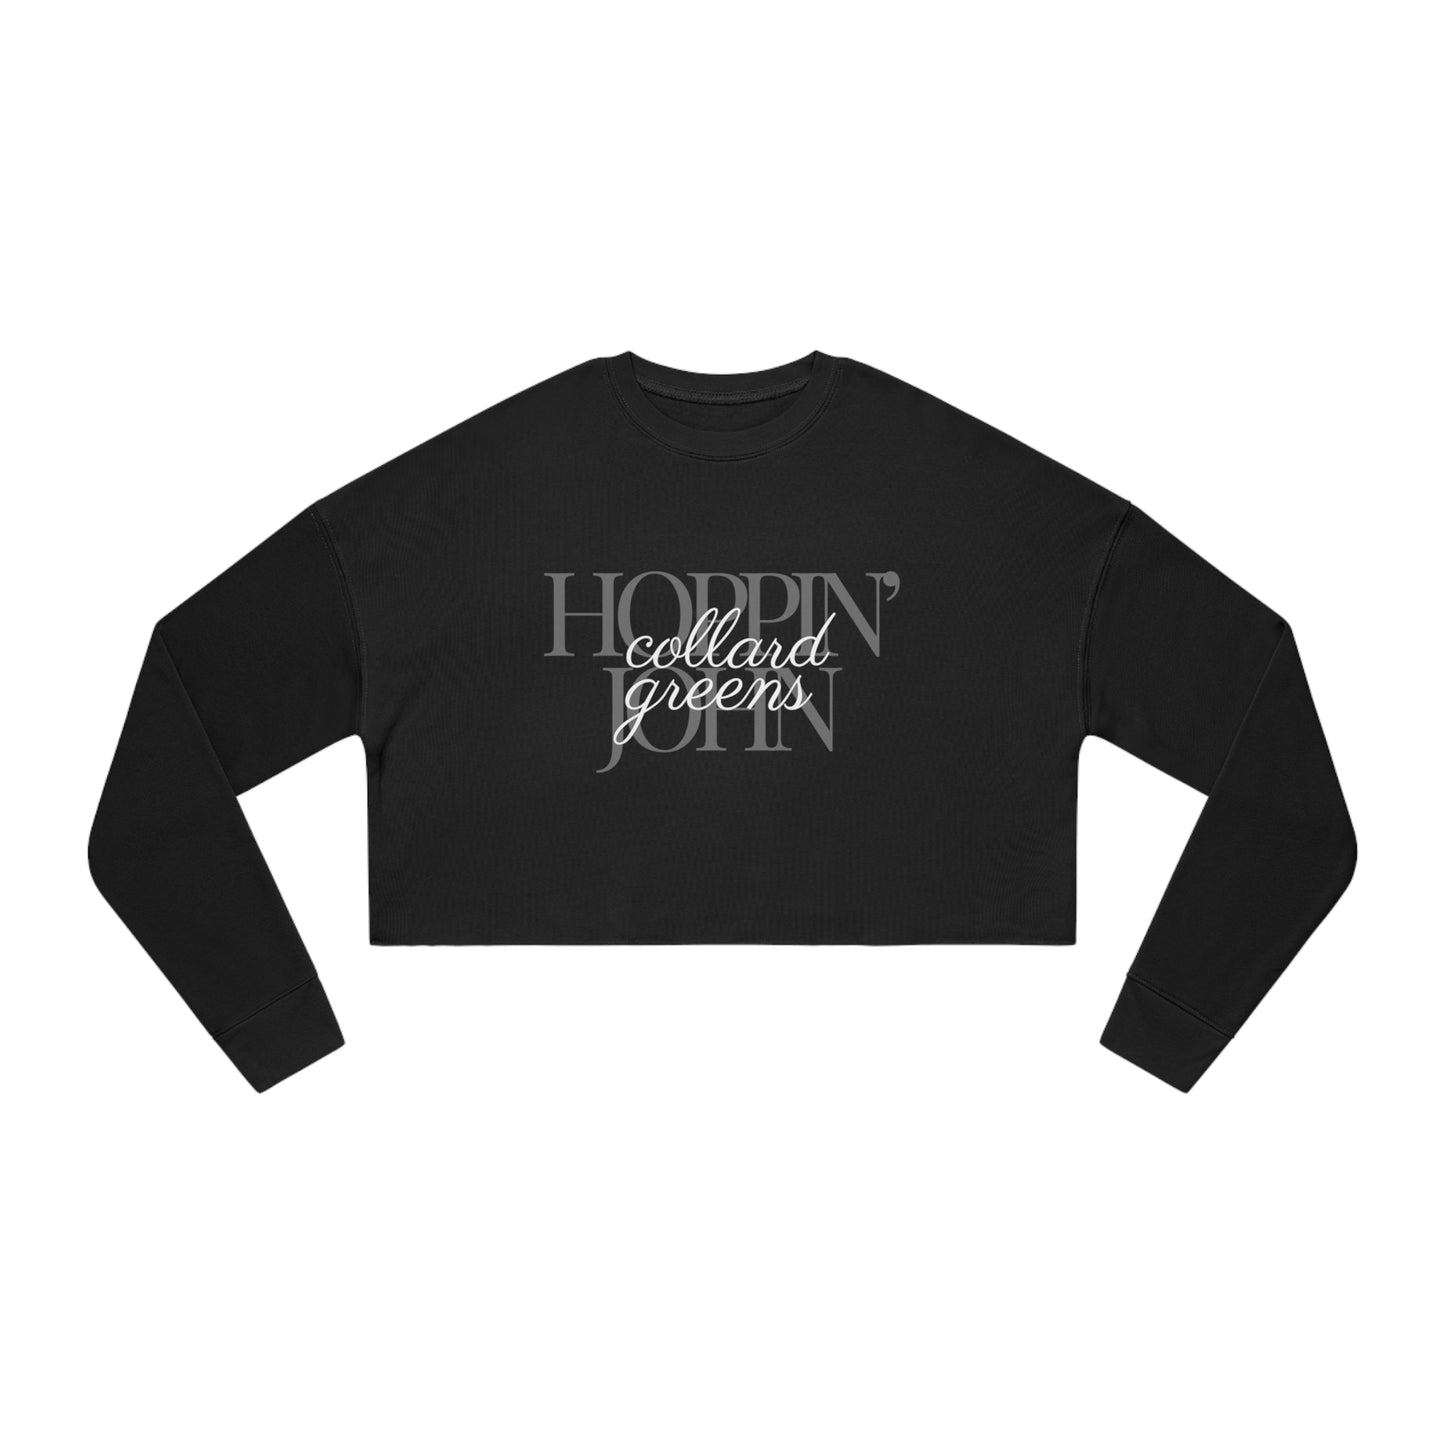 Hoppin John Women's Cropped Sweatshirt